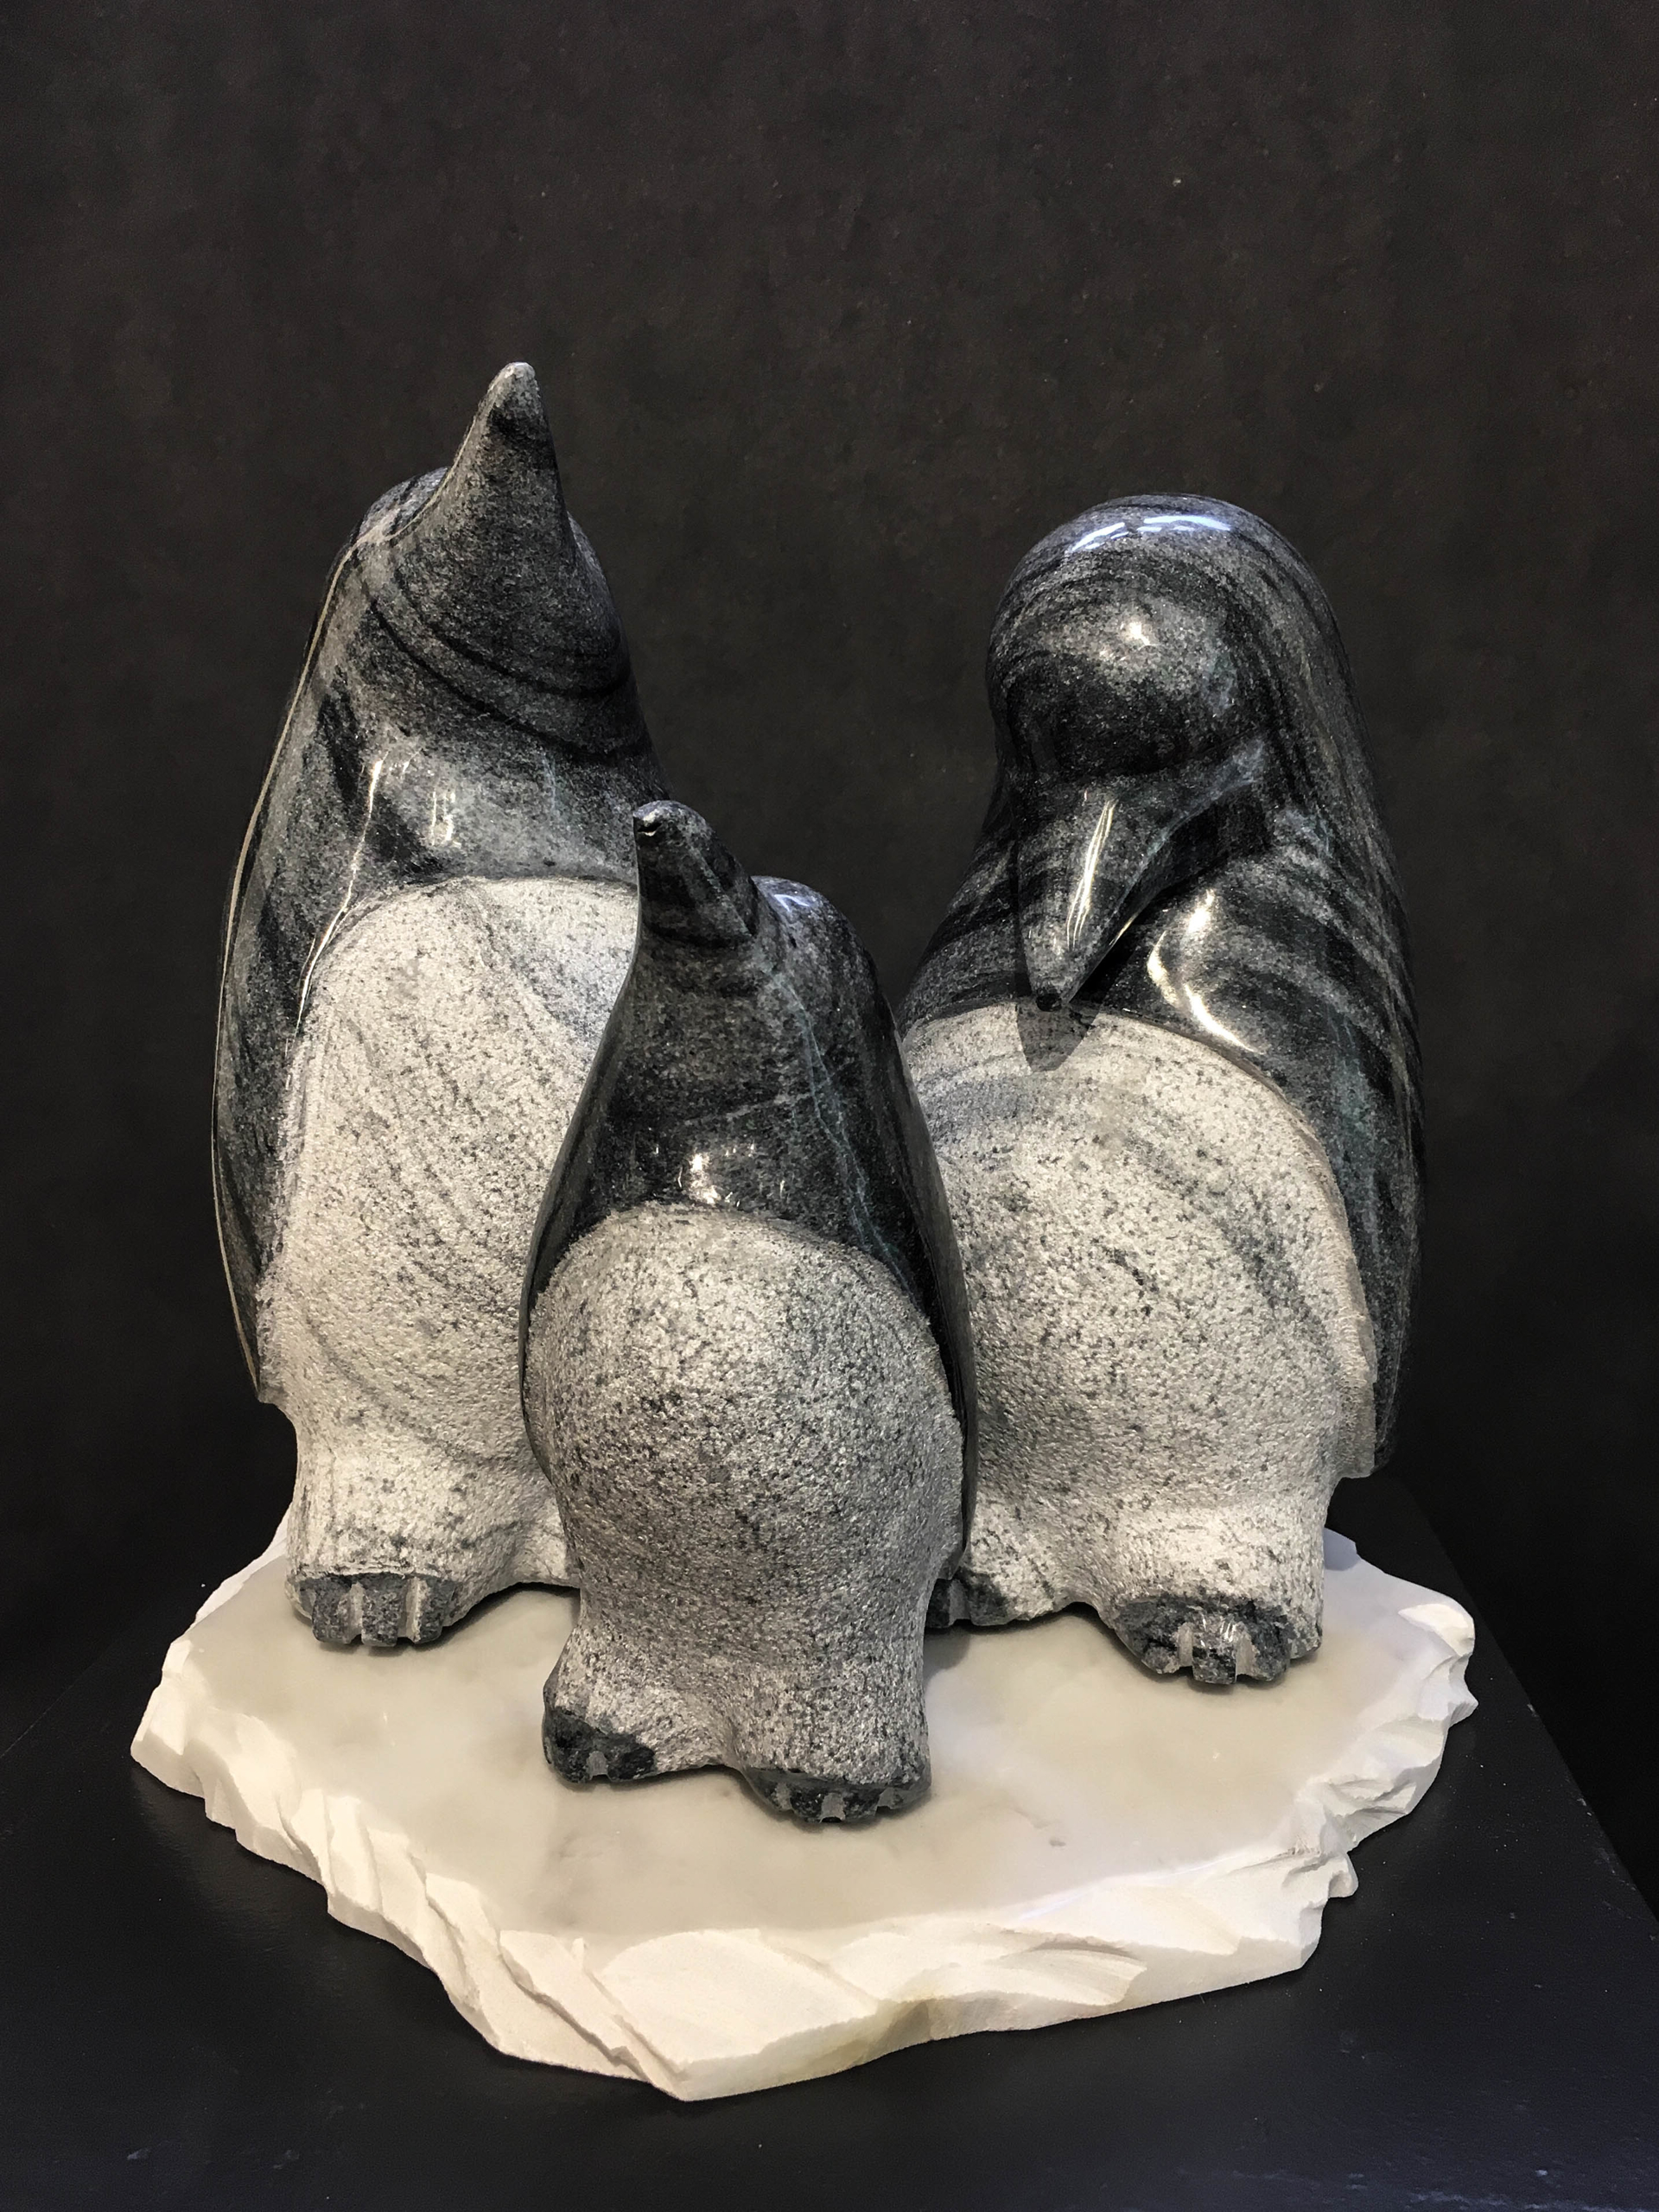 Penguin Family  by Gert Olsen